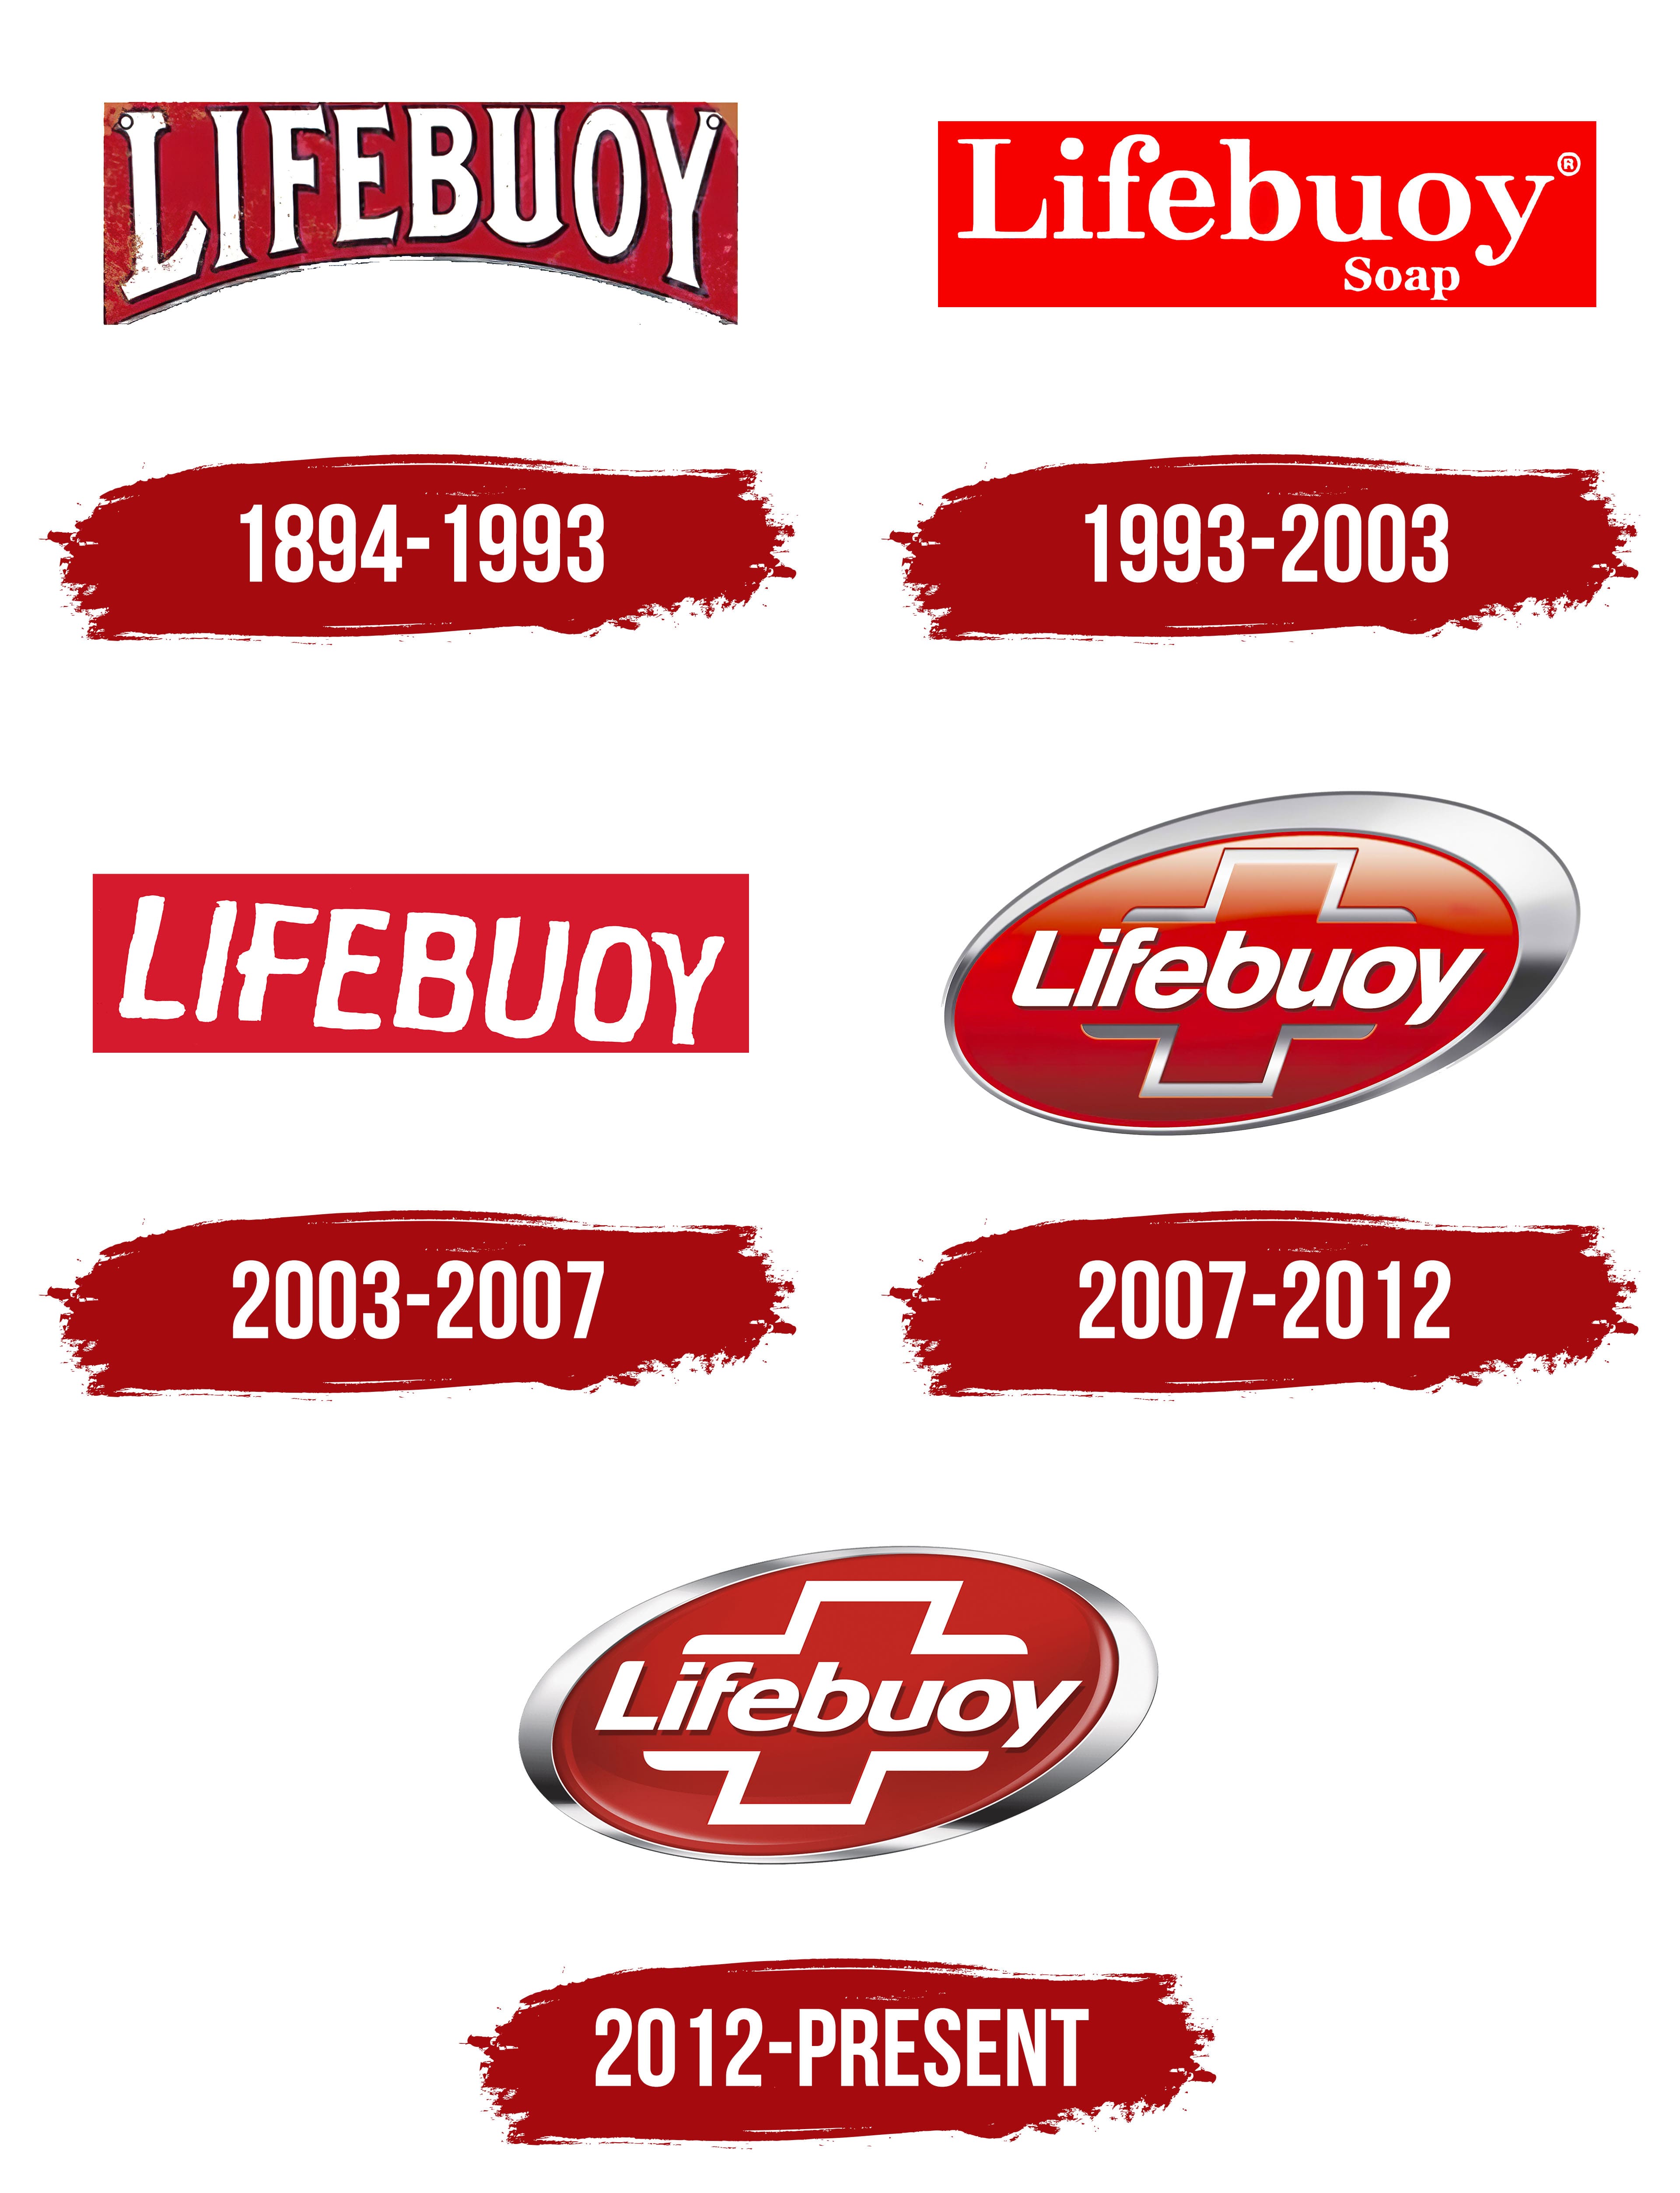 Lifebuoy logo Royalty Free Vector Image - VectorStock